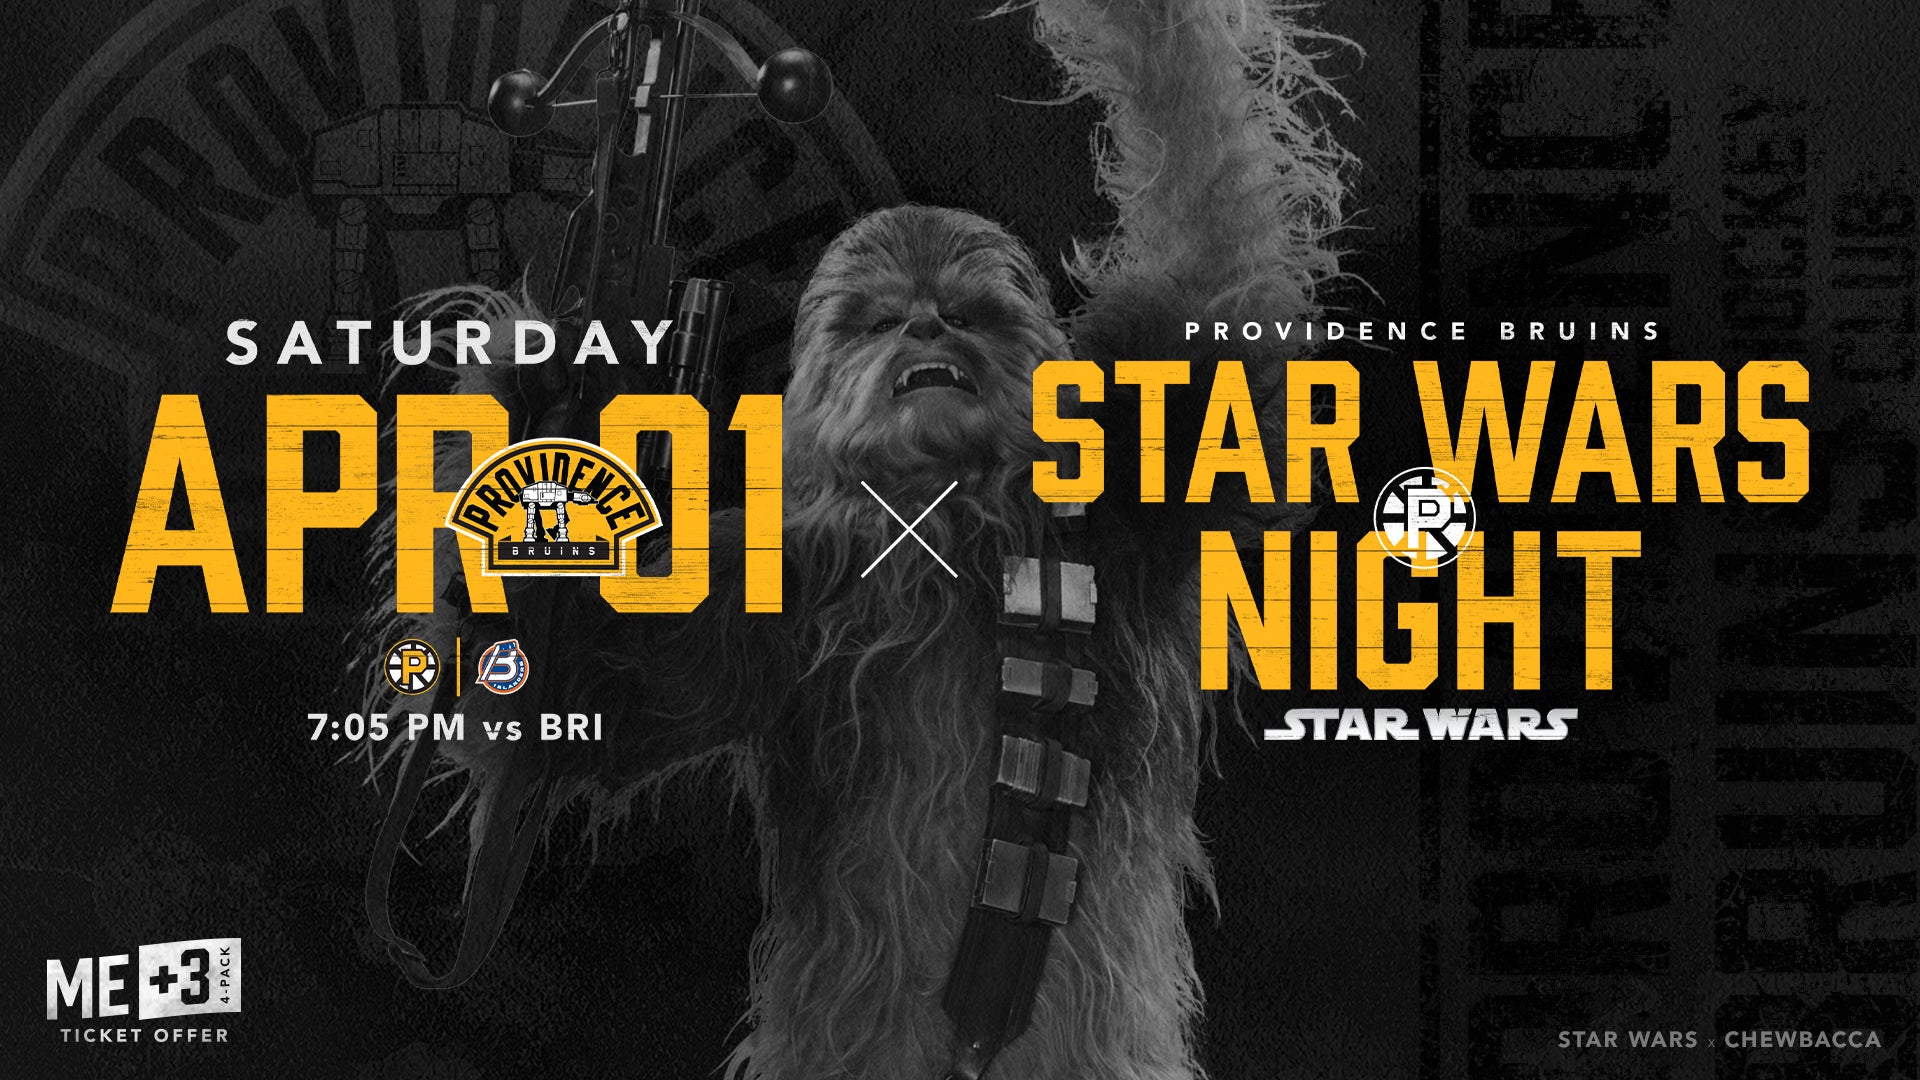 Star Wars Night  Providence Bruins